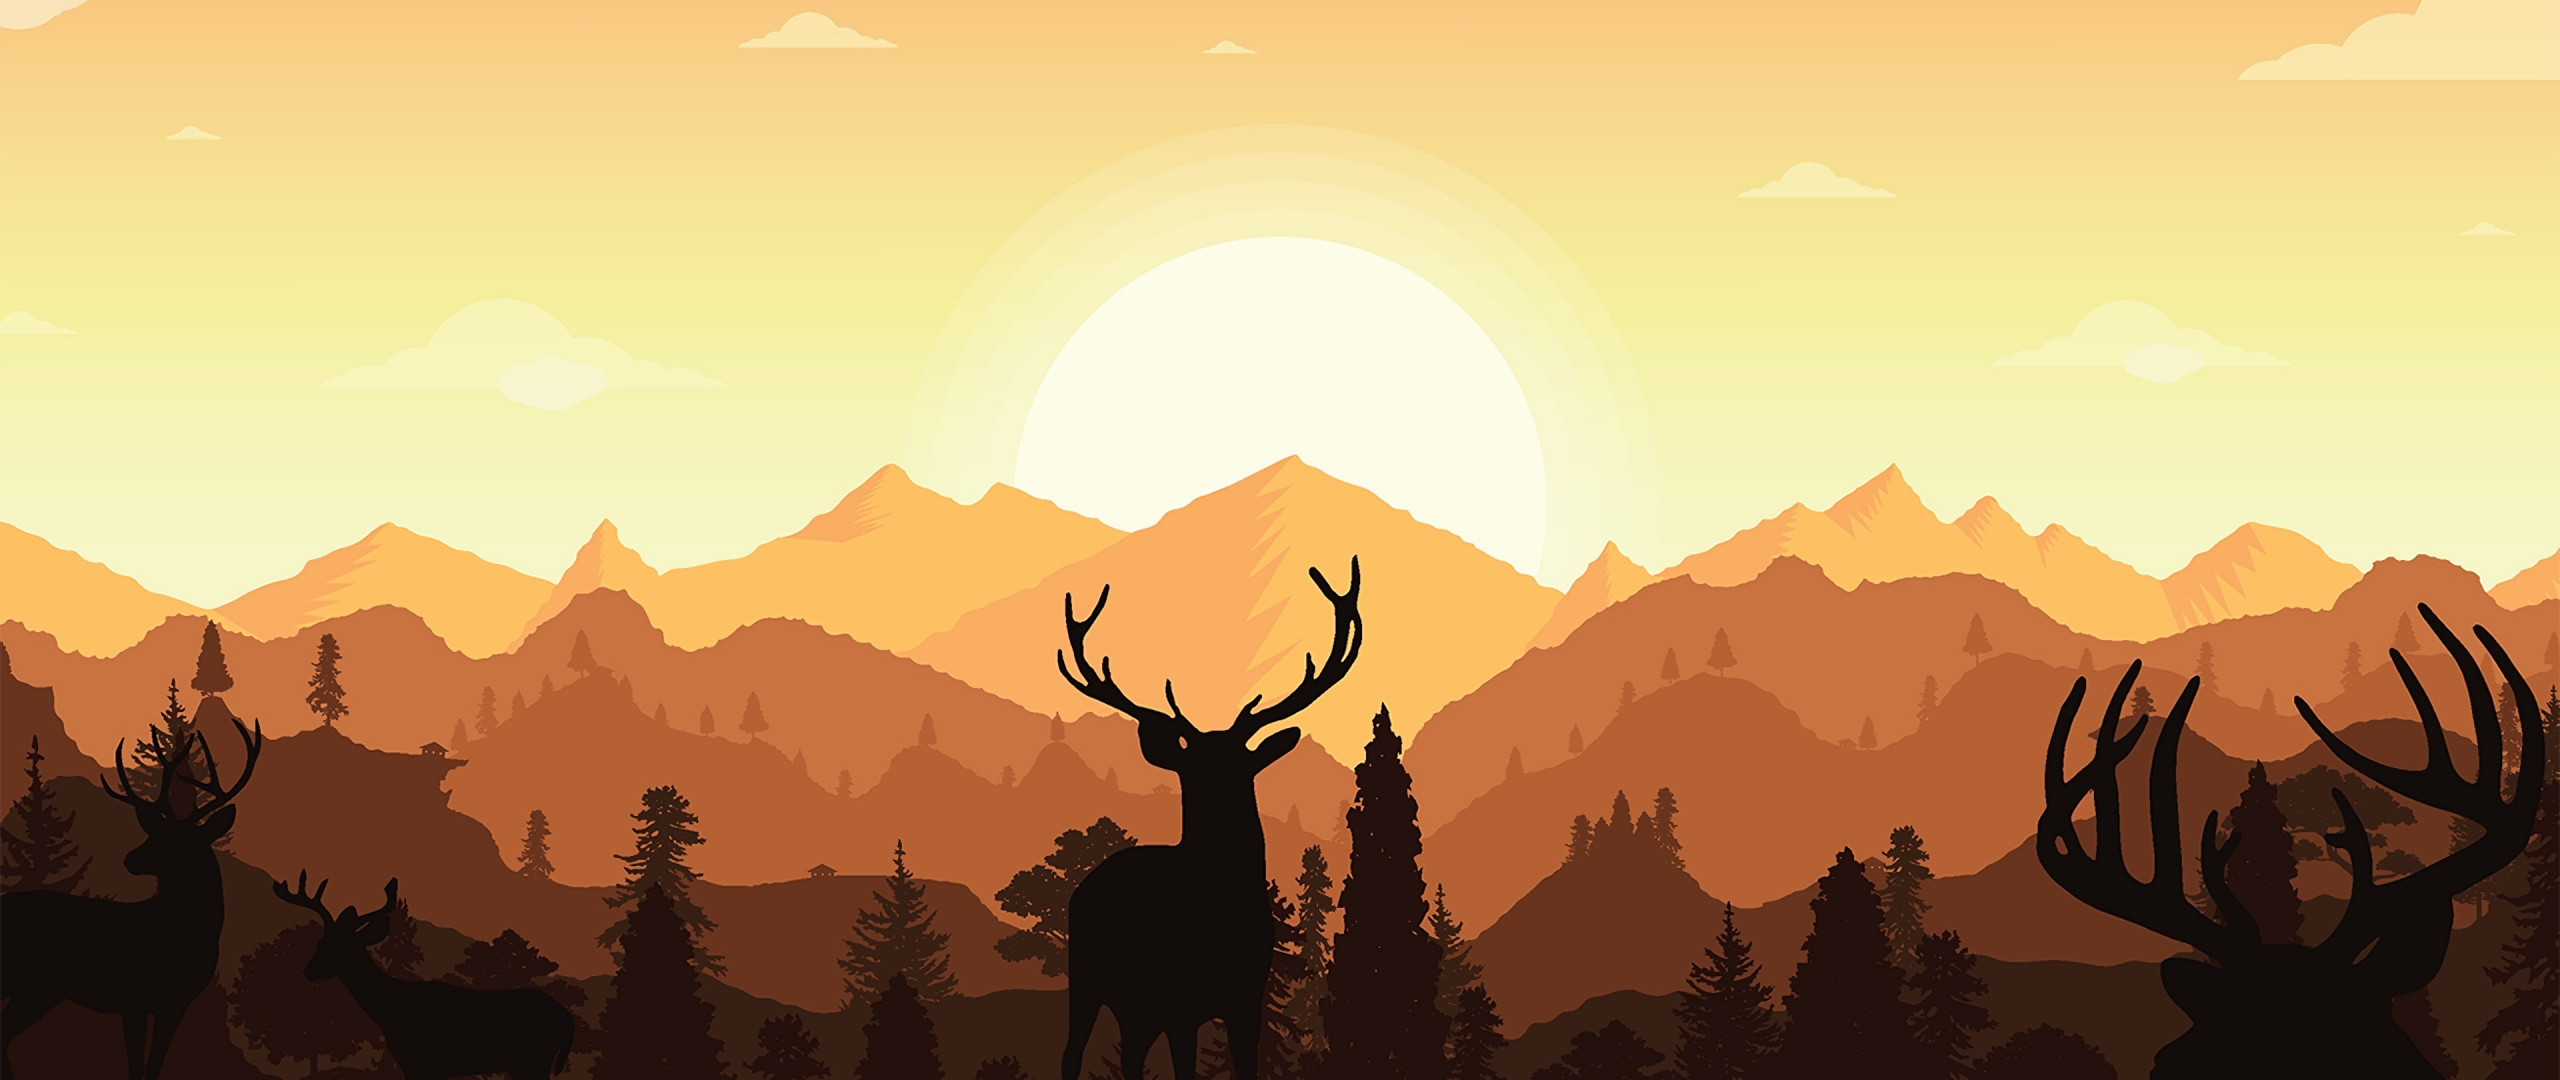 Download wallpaper 2560x1080 deer, sunset, outdoor, silhouette